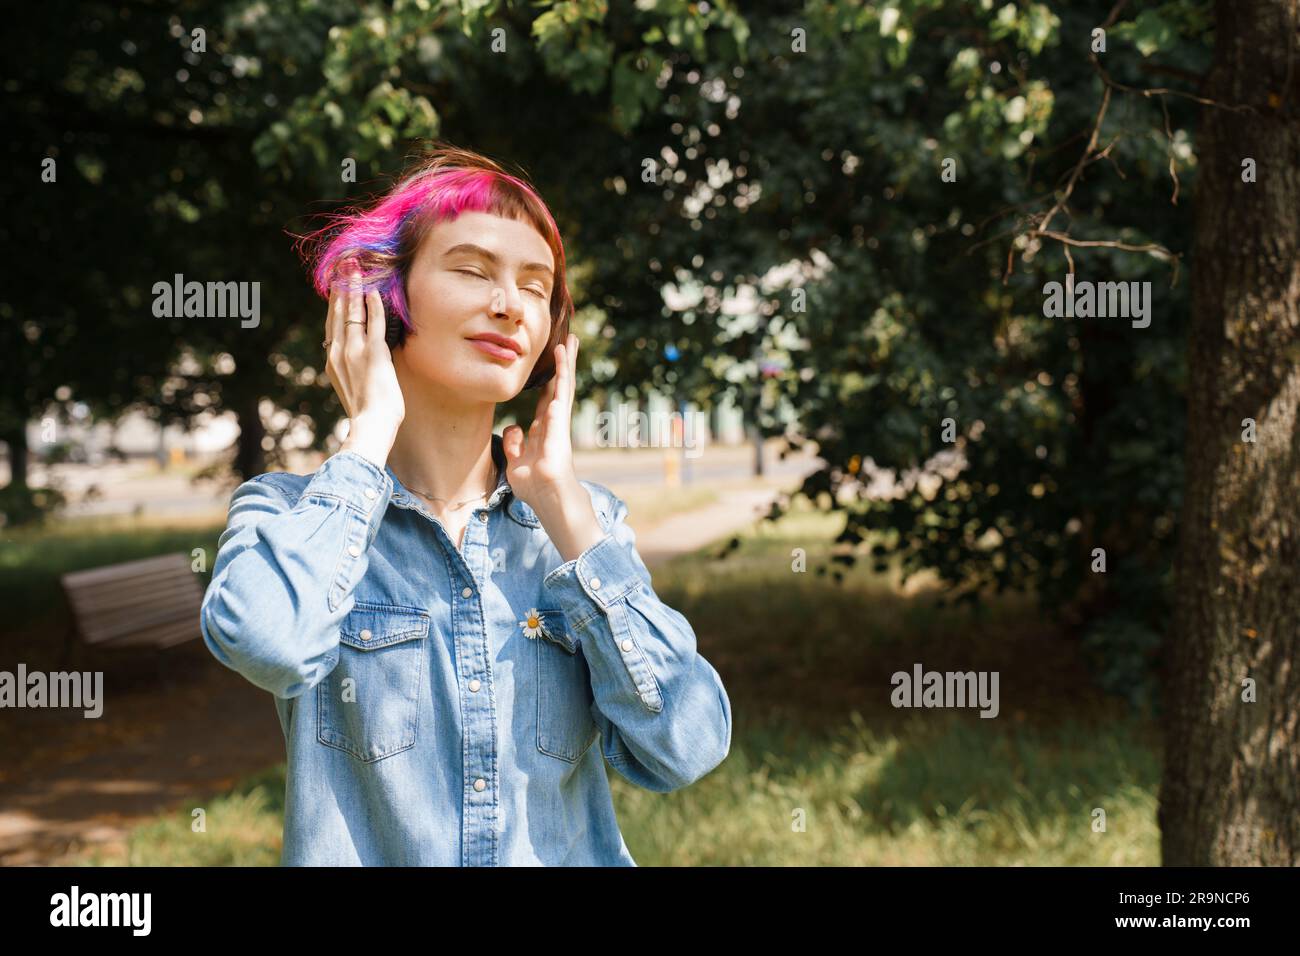 Ein Mädchen mit pinkfarbenen Haaren und Kopfhörern hört im Sommer im Park Musik Stockfoto